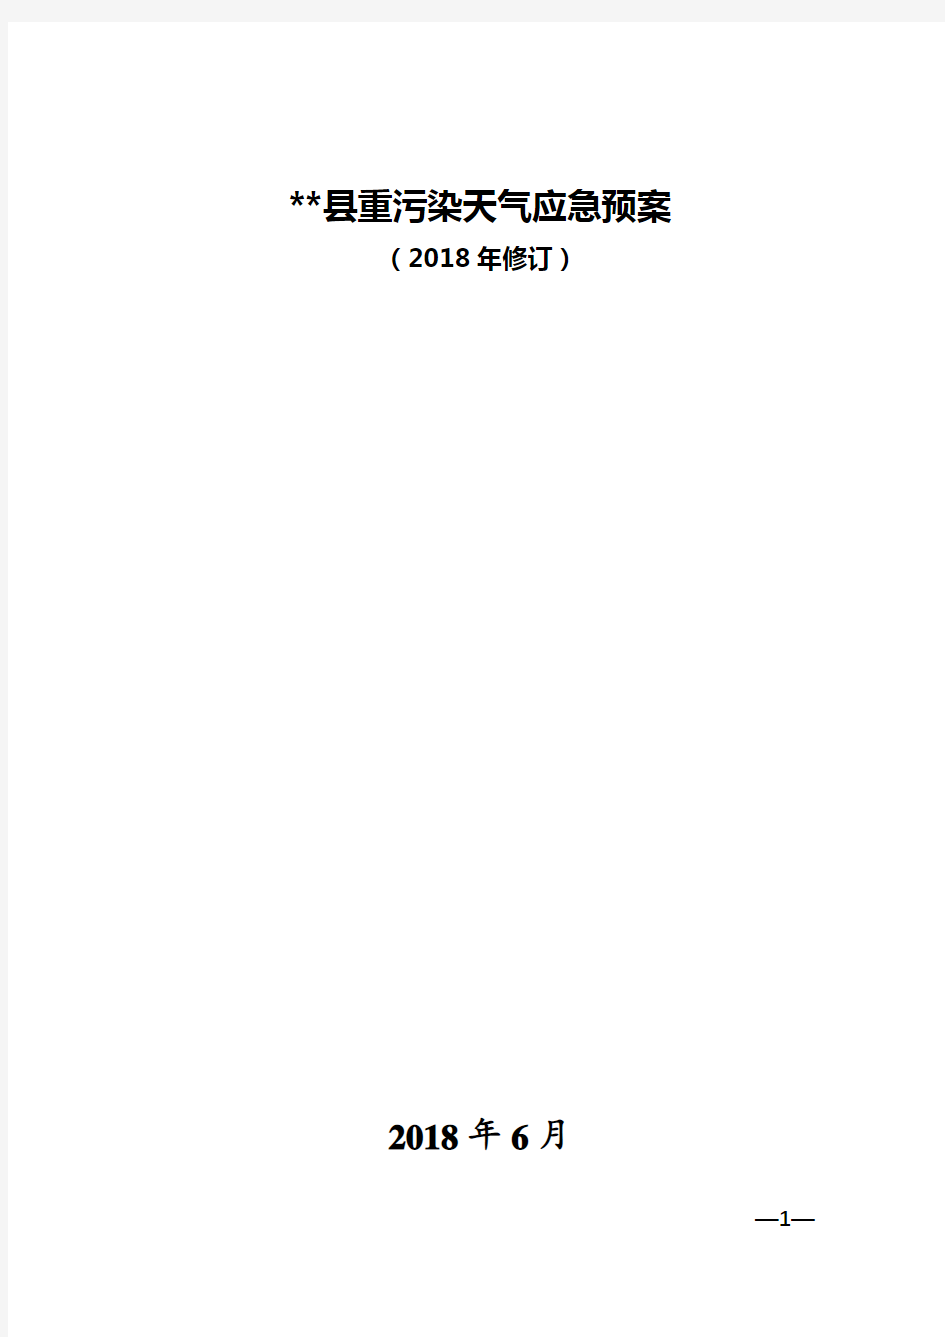 县重污染天气应急预案(2018年修订)【模板】